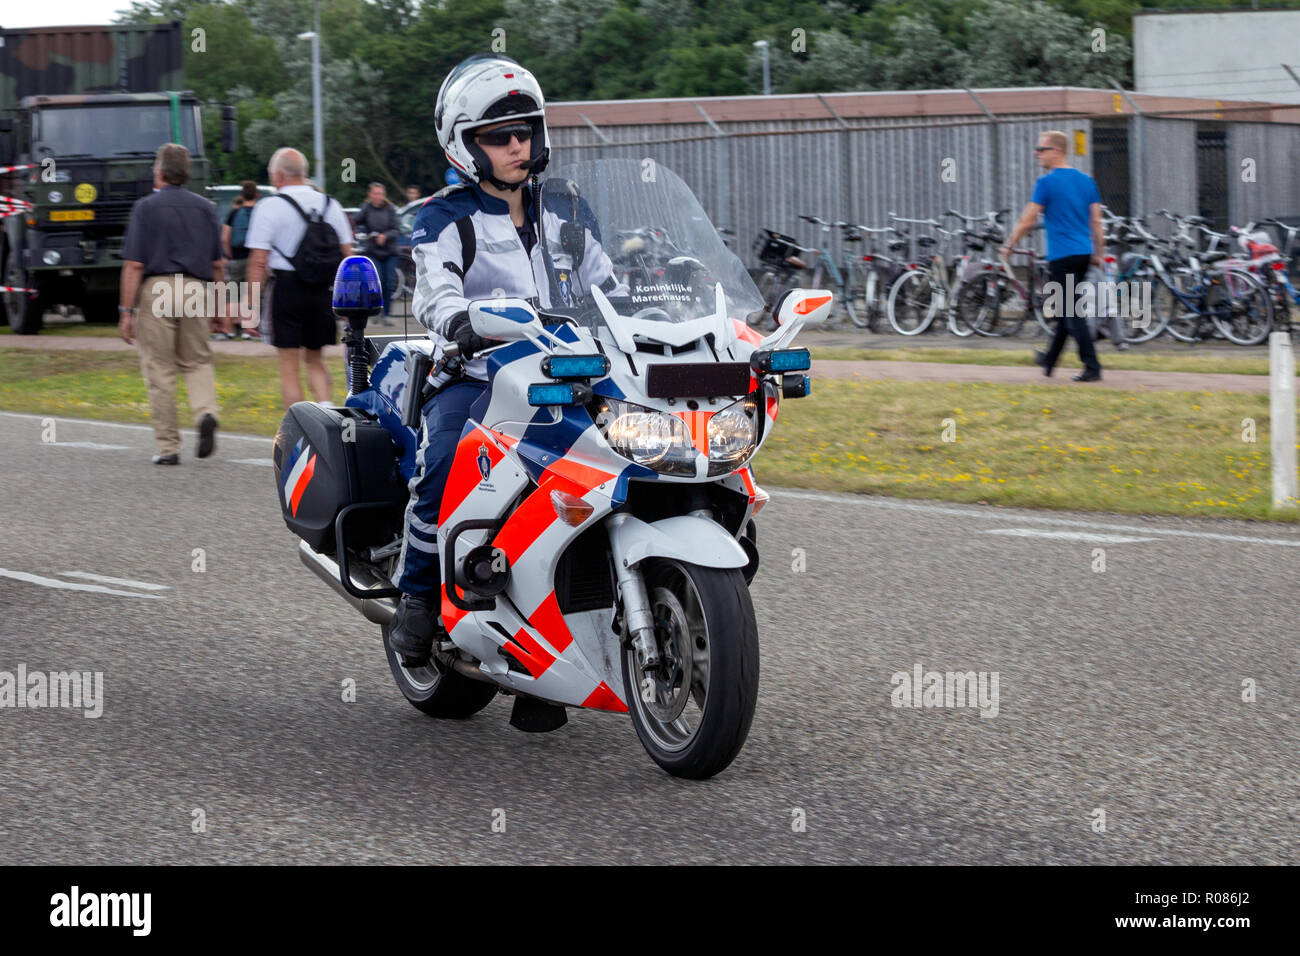 DEN Helder, Niederlande - Apr 7, 2012: niederländische Militärpolizei (marechaussee) Offiziere patrouillieren mit seinem Motorrad auf der Straße. Stockfoto